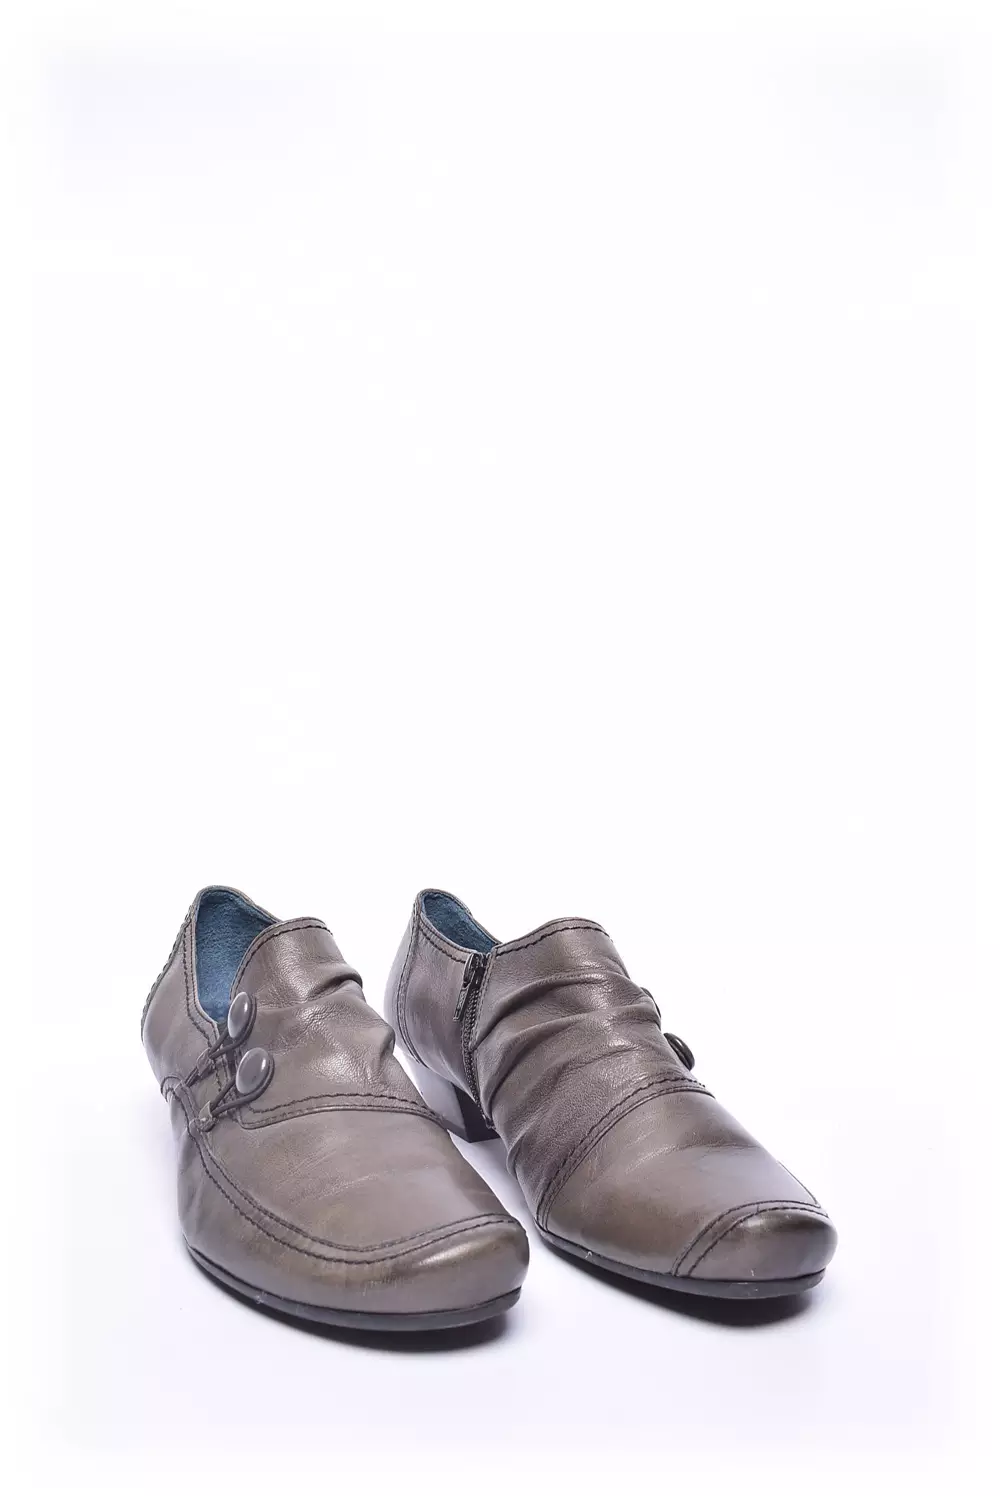 Pantofi dama  [3]